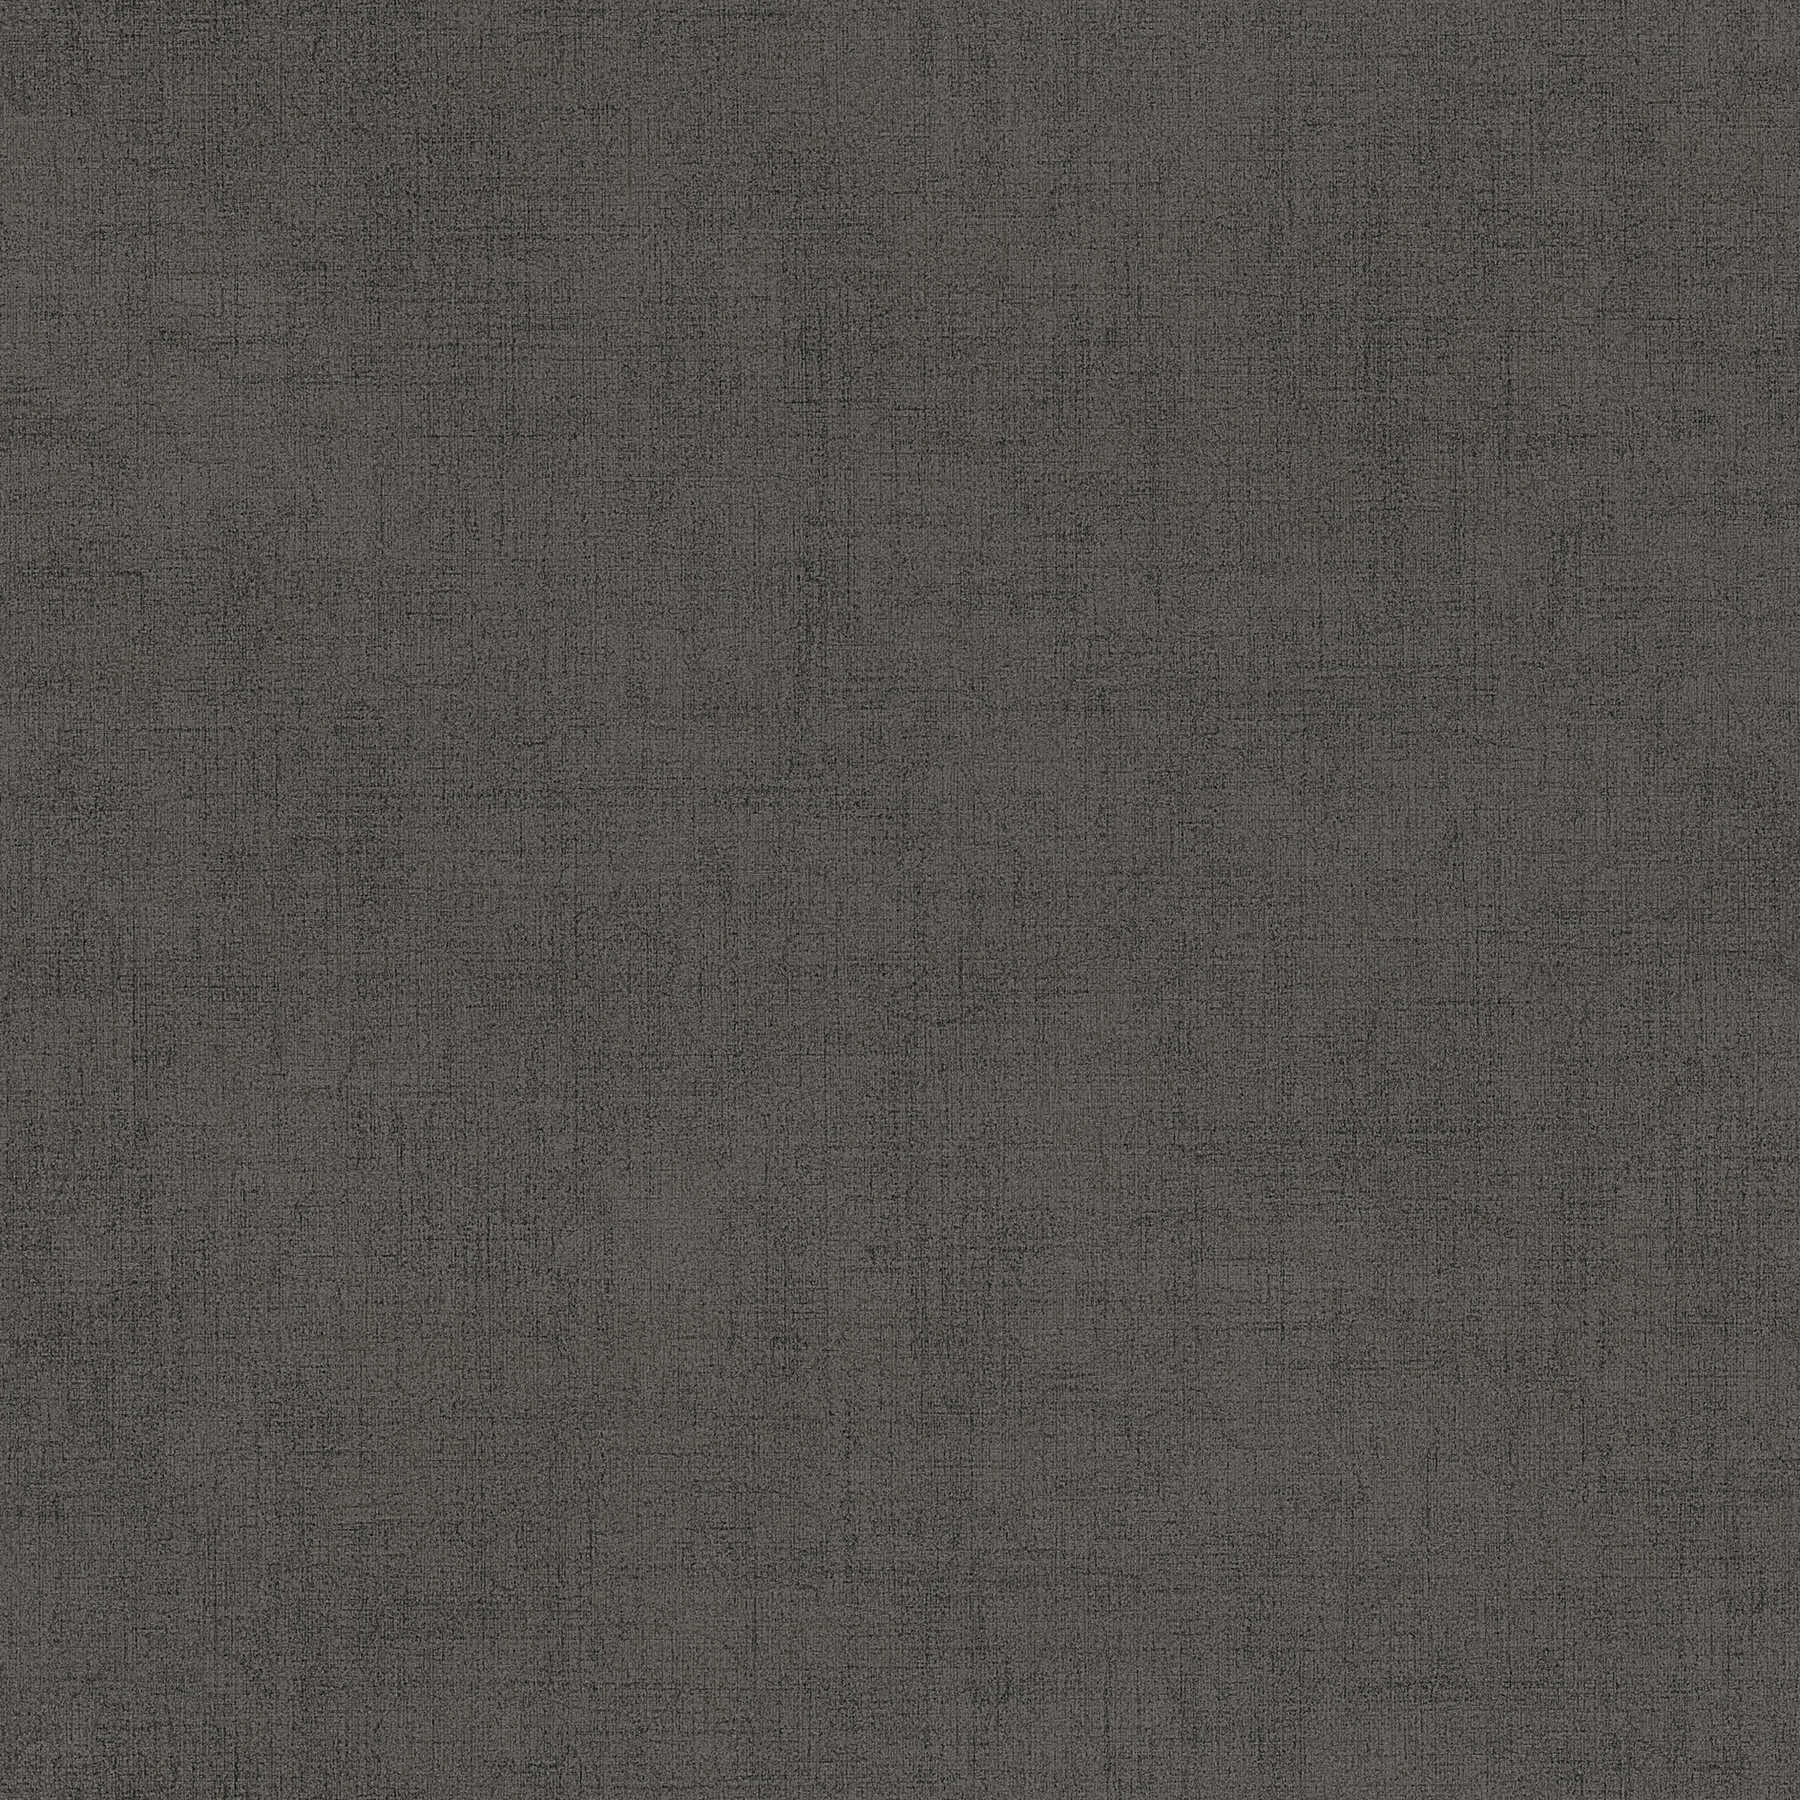 Carta da parati grigio antracite con struttura tessile ed effetto lucido
